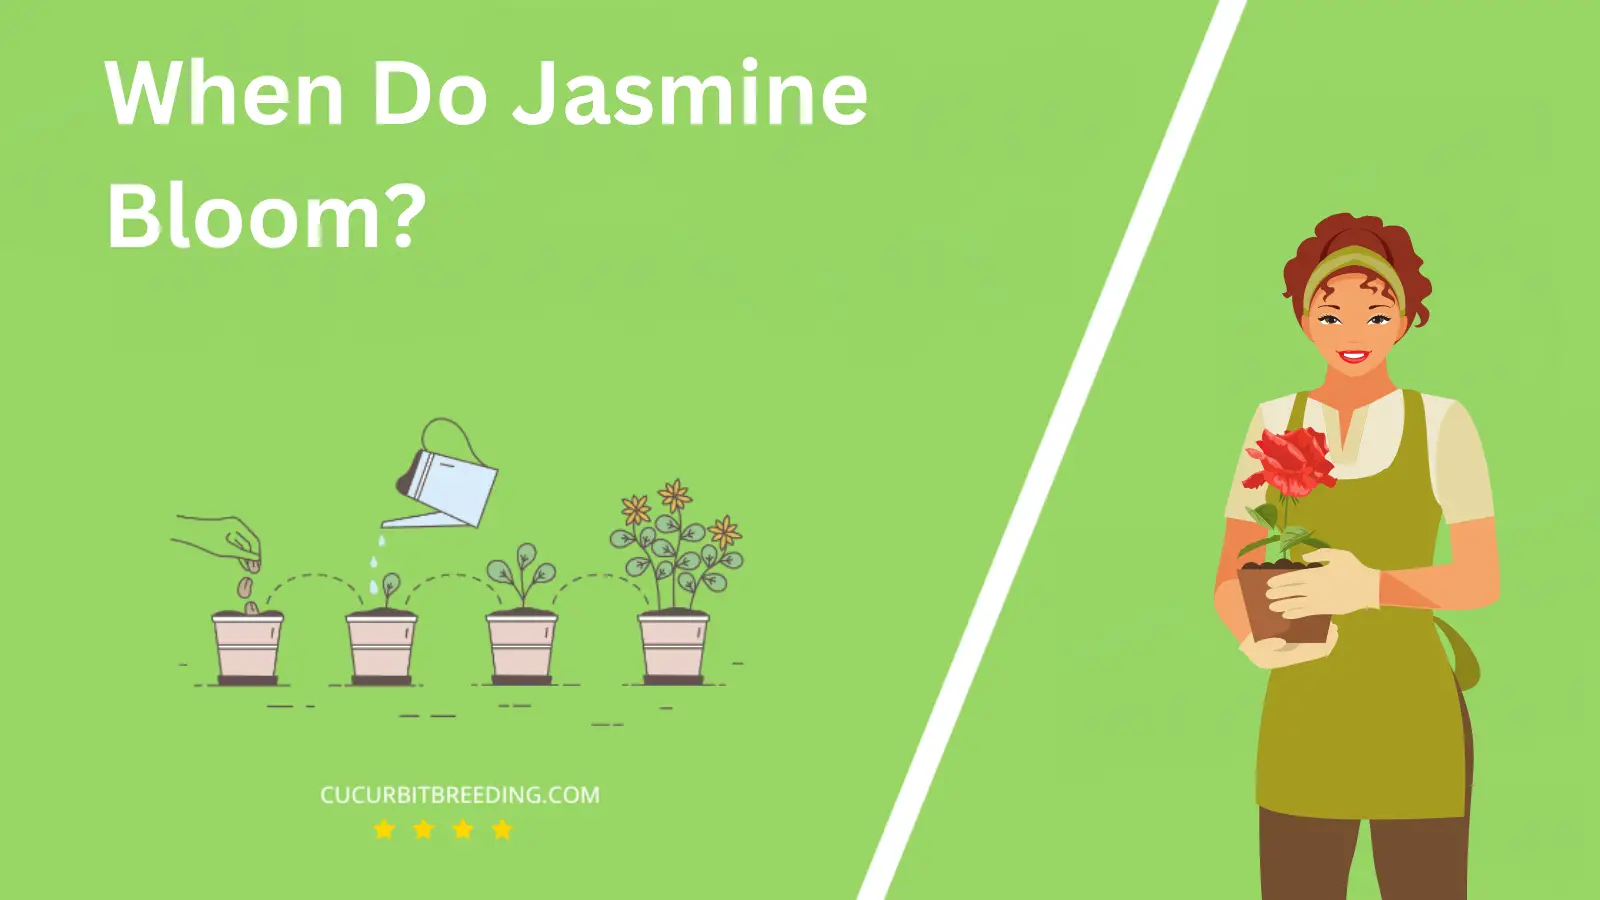 When Do Jasmine Bloom?